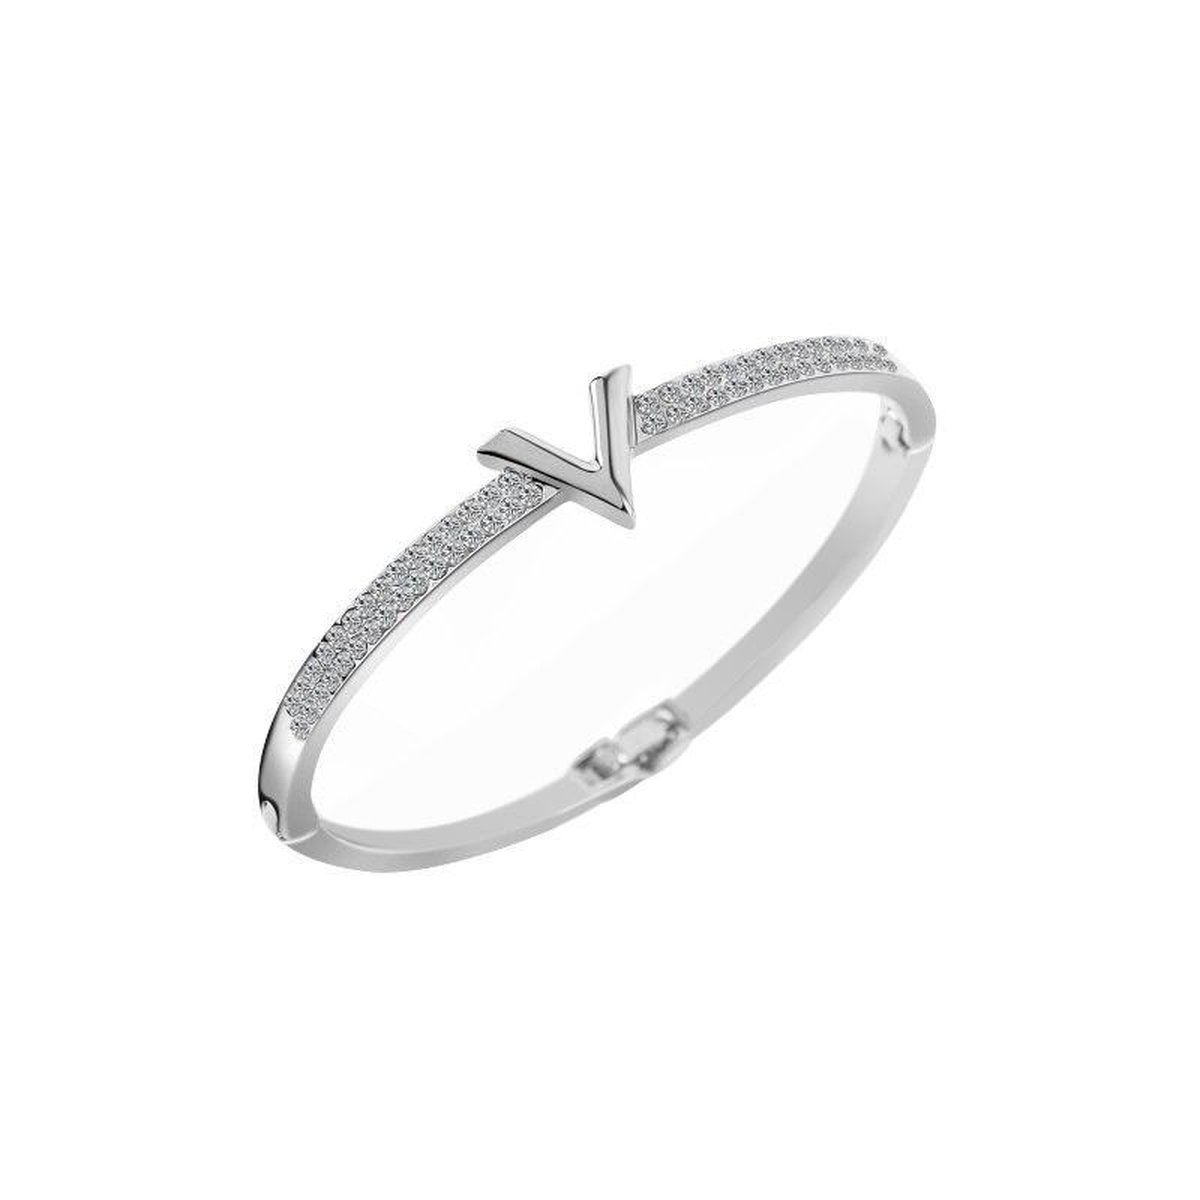 Shoplace Victoria kristallen armband dames - 19cm - Zilver - Valentijn cadeautje voor haar